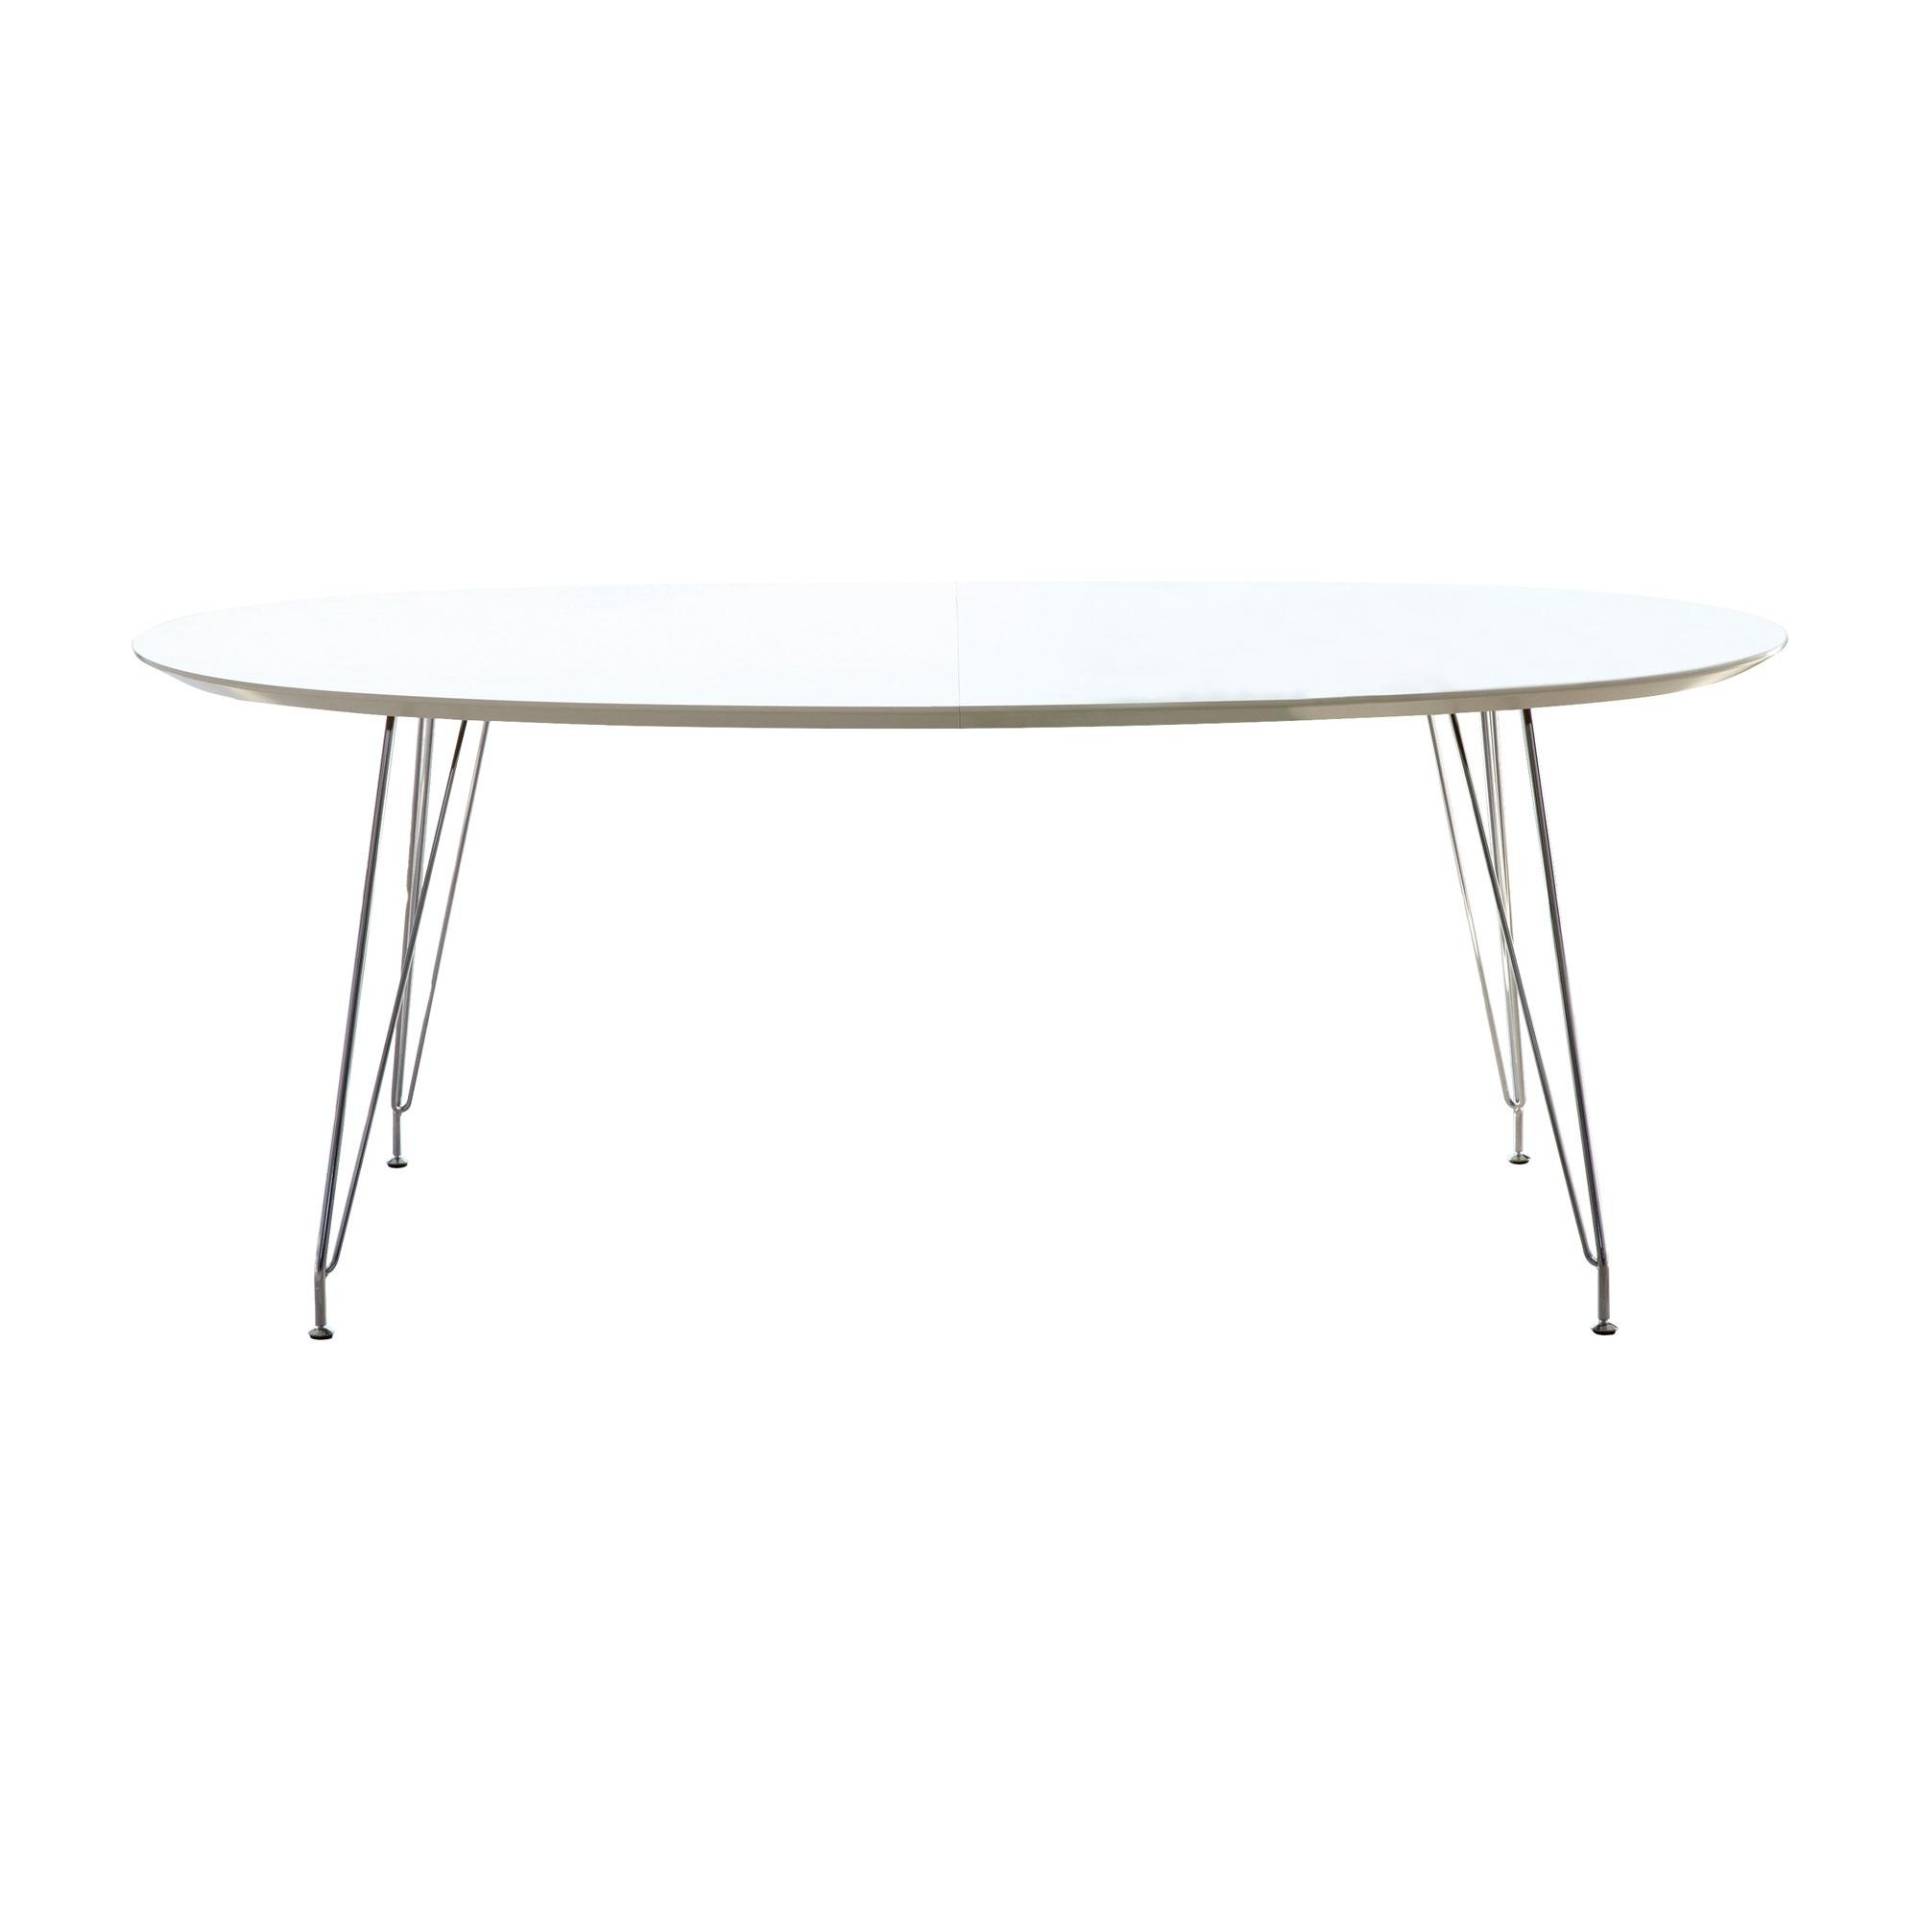 Andersen Furniture - DK10 Esstisch ausziehbar Beine Chrom - weiß/Laminat/LxBxH 190x110x72cm/Gestell chrom von Andersen Furniture